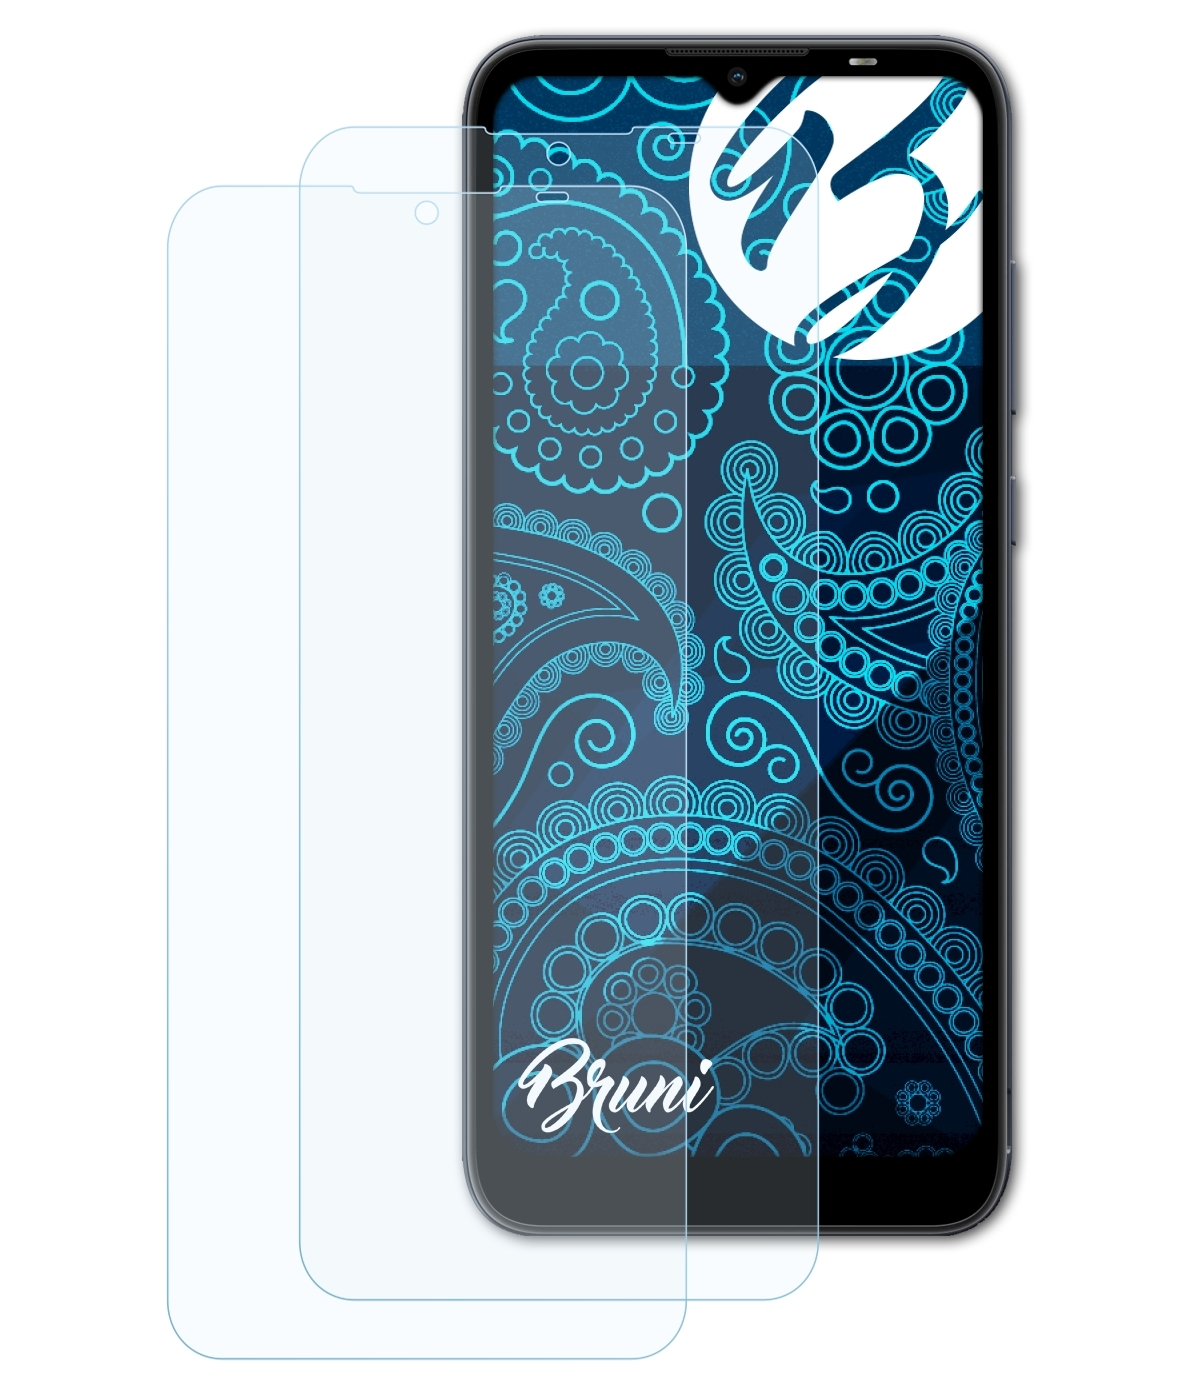 BRUNI 2x Basics-Clear Nokia Schutzfolie(für C20)